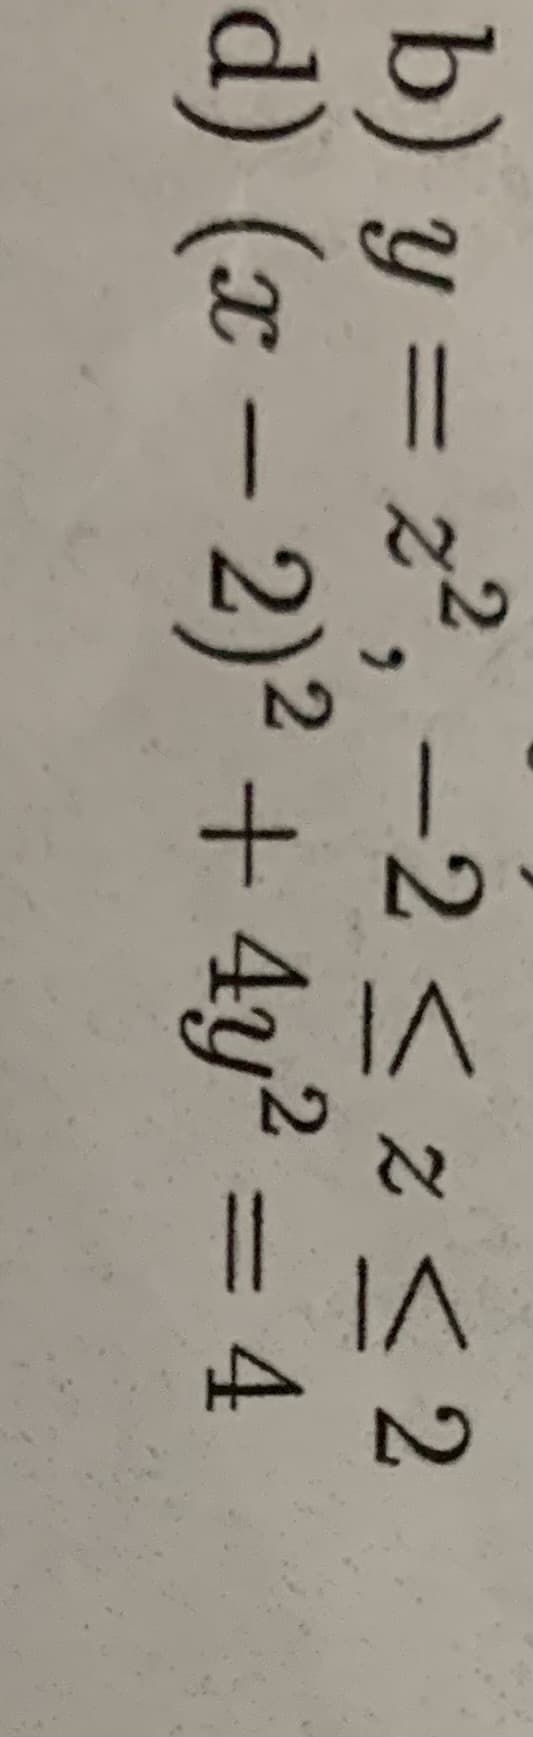 b) y = z², –2 < z< 2
d) (x – 2)² + 4y? = 4
